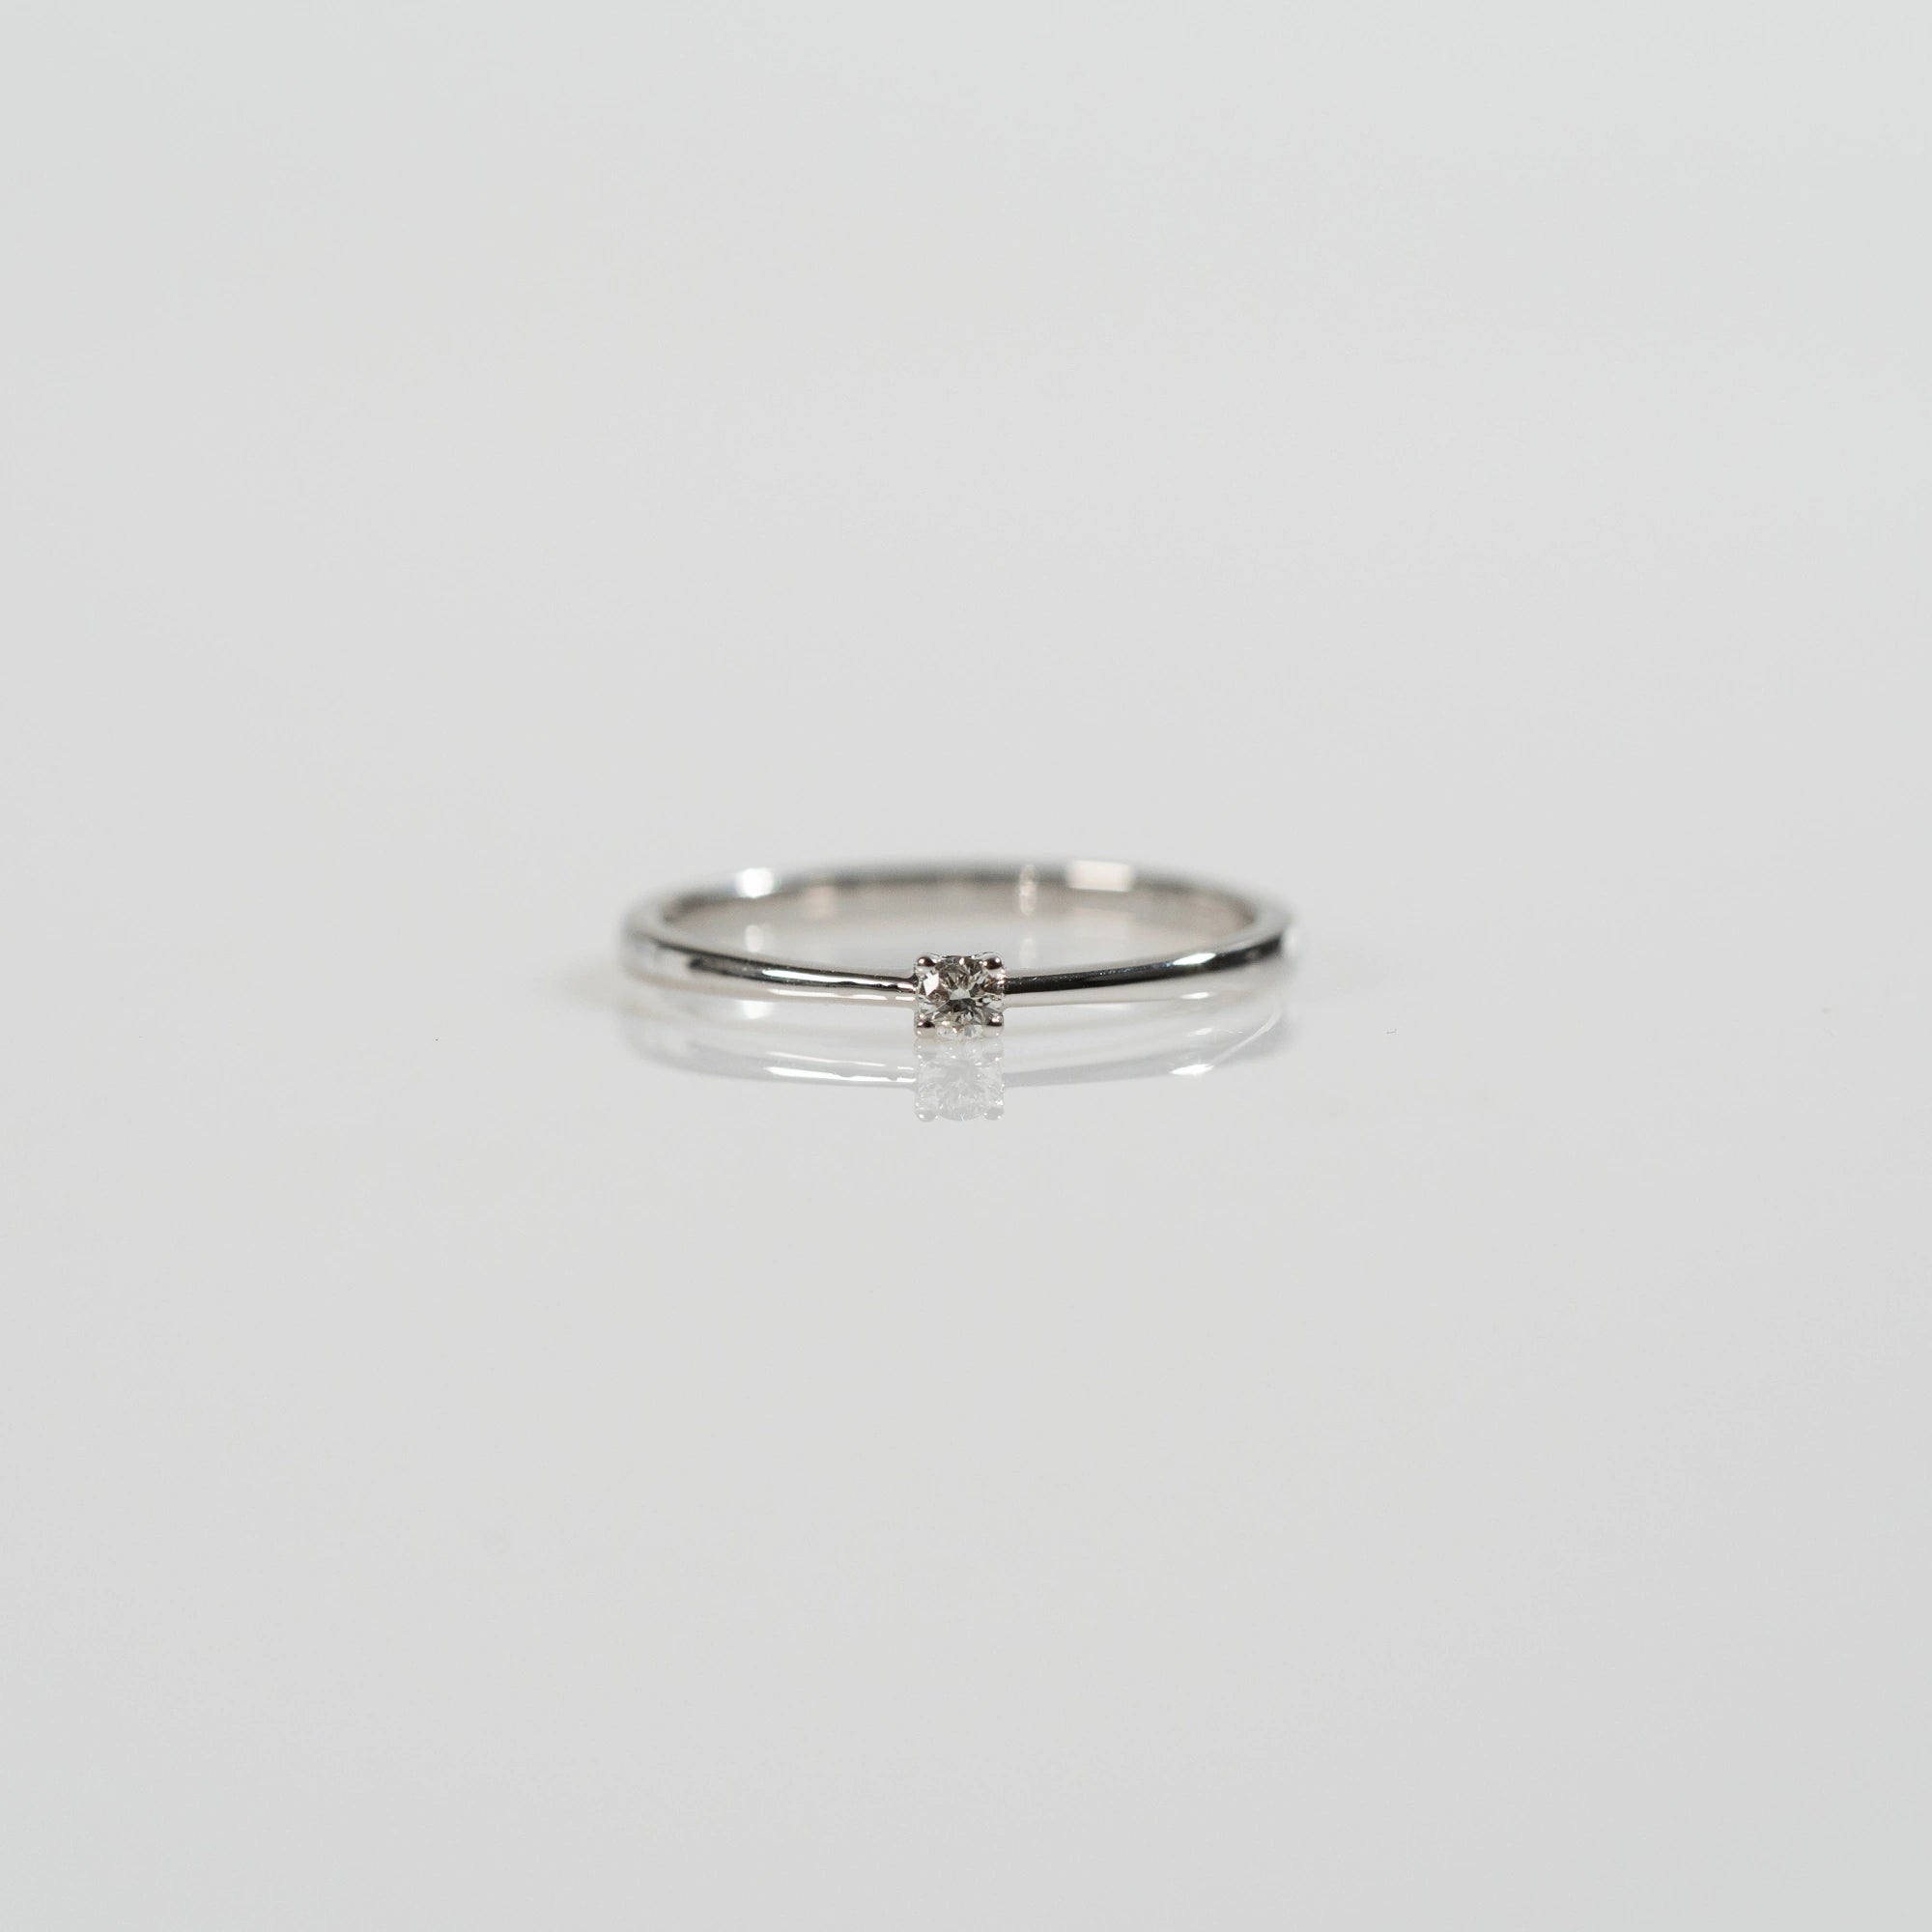 Frontale Ansicht des Verlobungsrings "Forever" aus der Schmuckatelier Lang Collection mit einem in einer 4er Kappe gefassten Diamanten mit einem Gewicht von 0.05 Carat